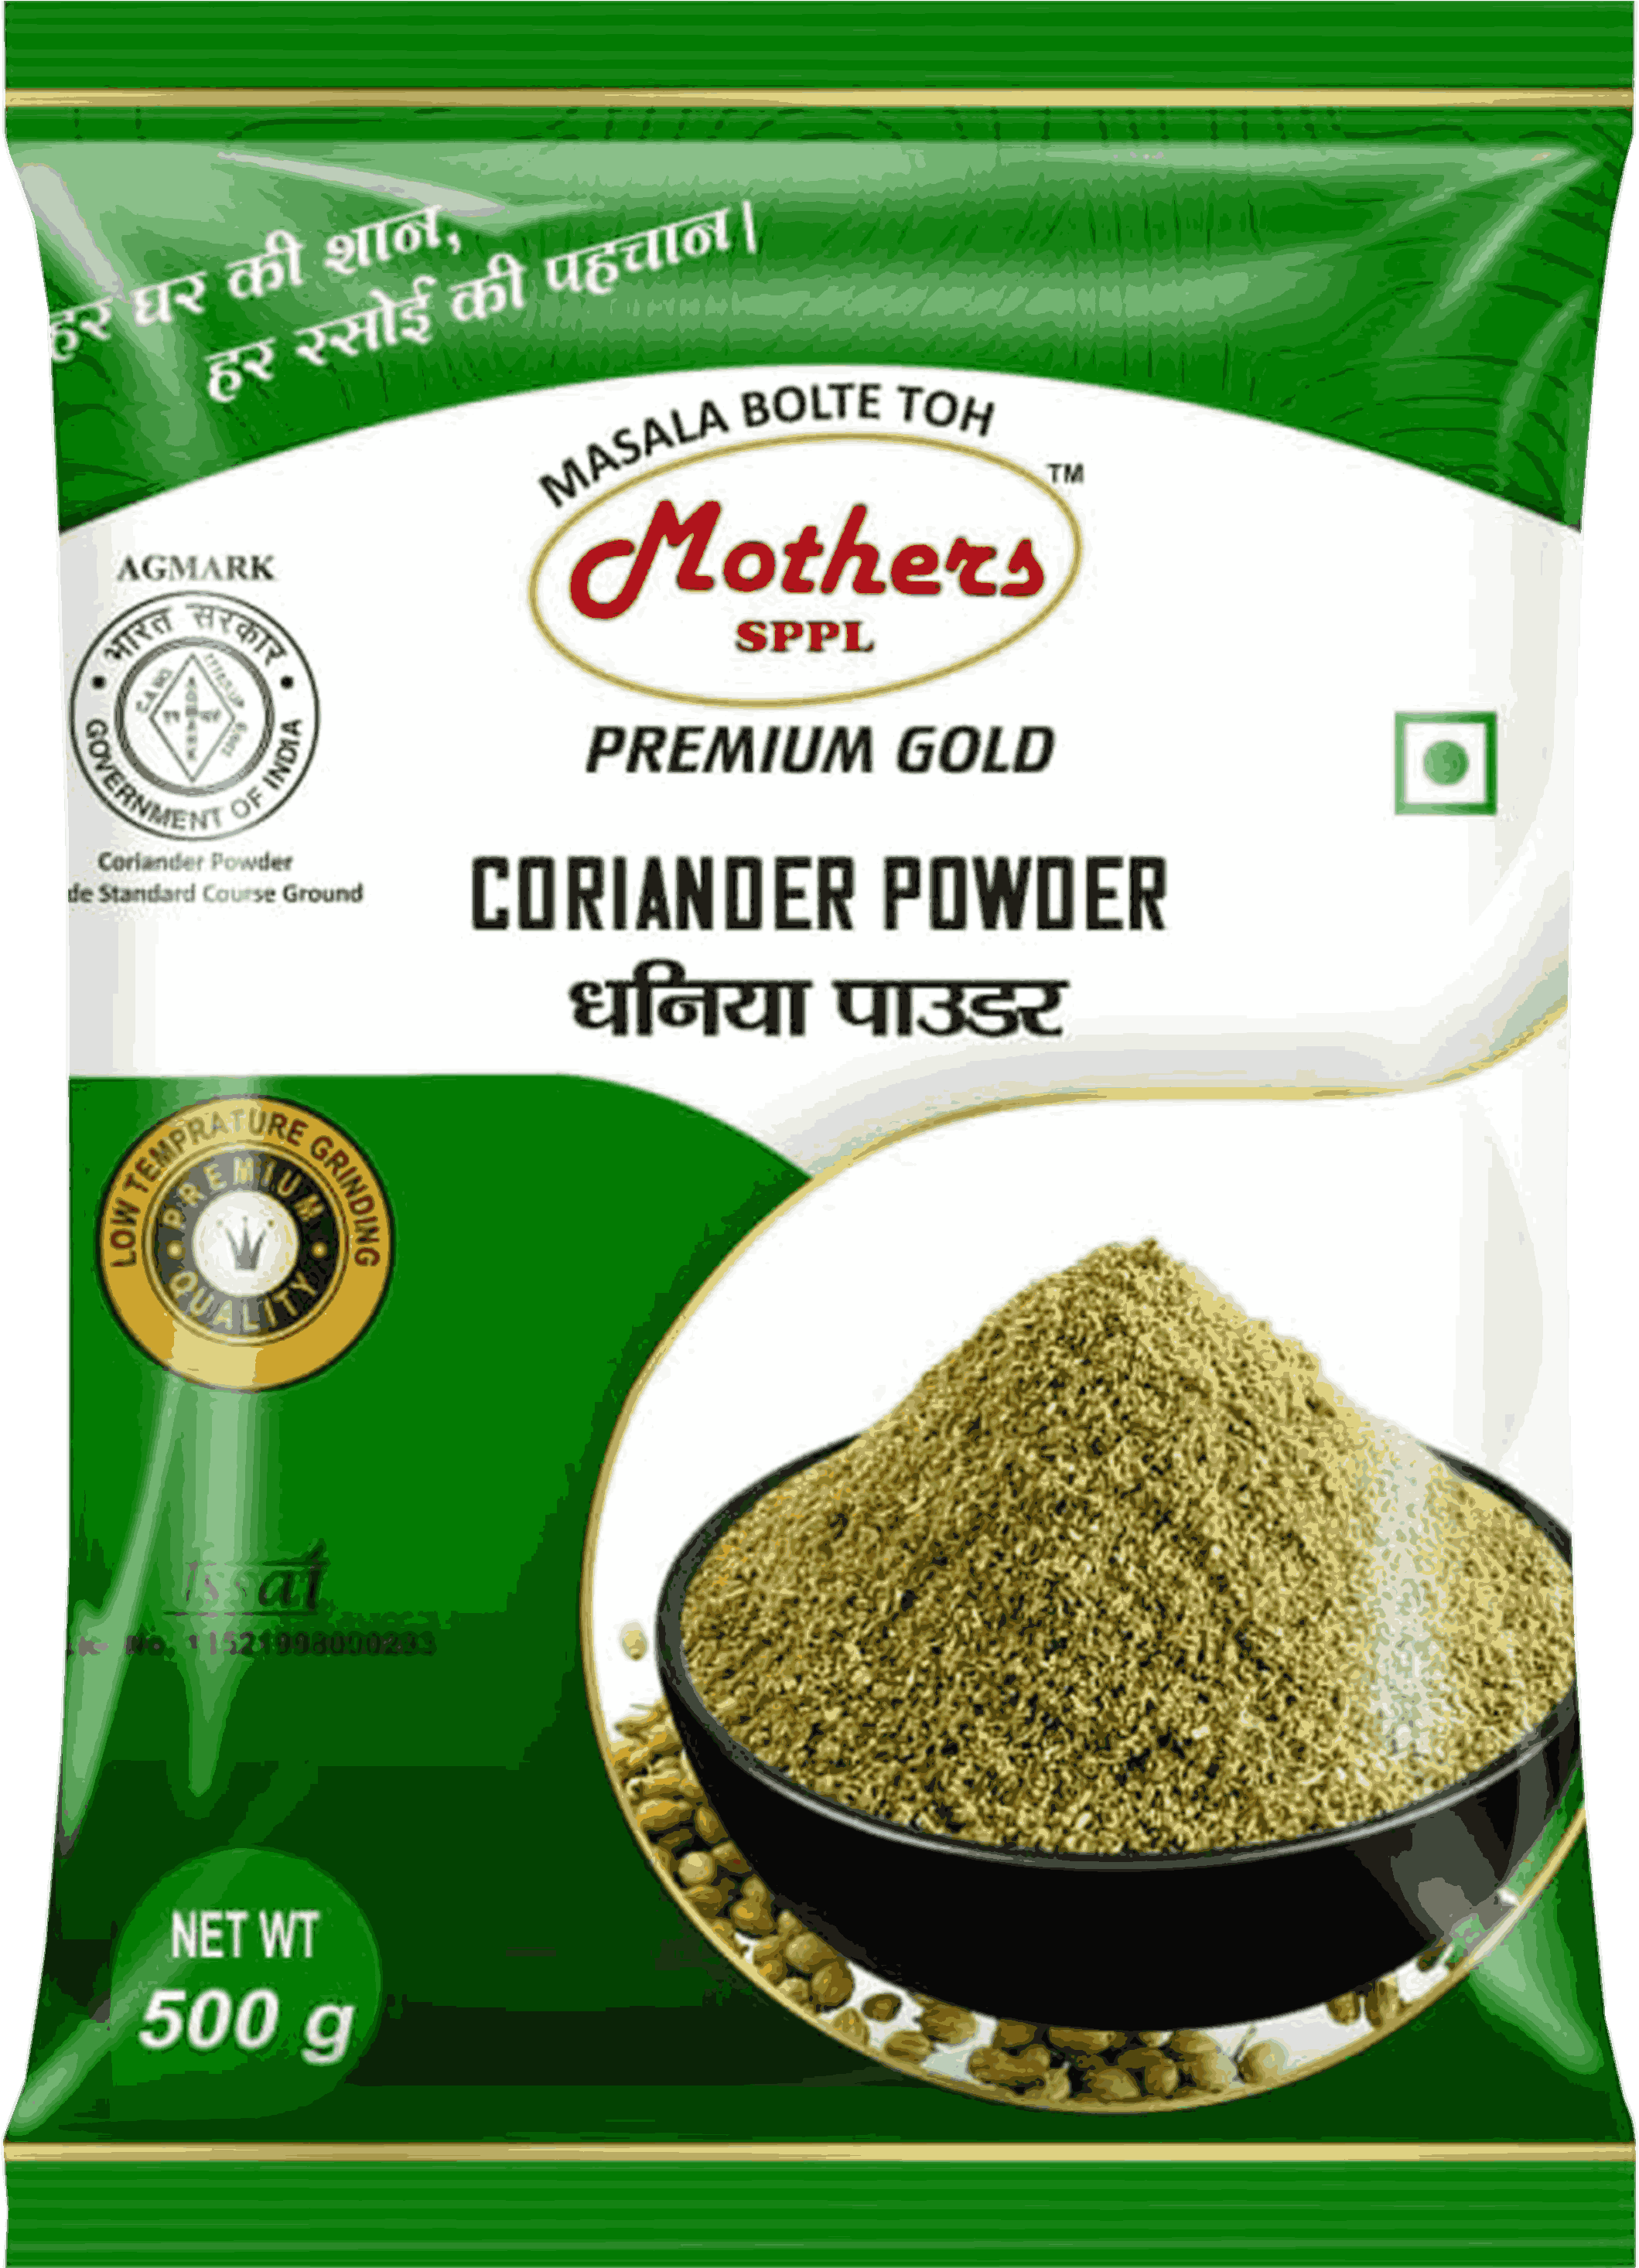 Premium Gold Coriander Powder